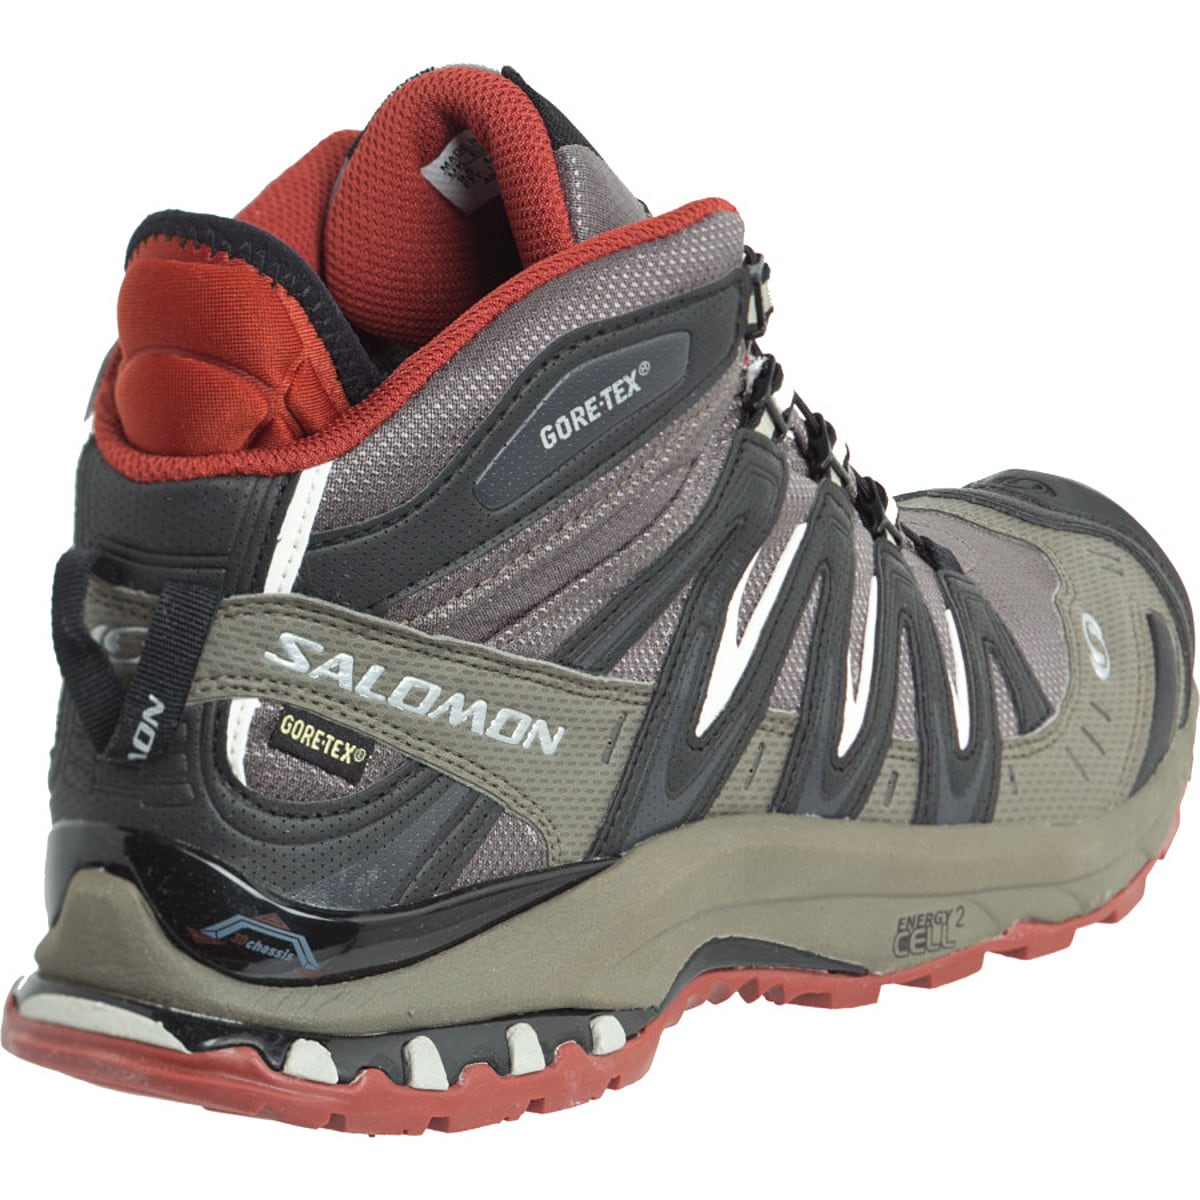 Salomon Pro 3D Mid GTX Ultra Trail Running Shoe - Men's Footwear